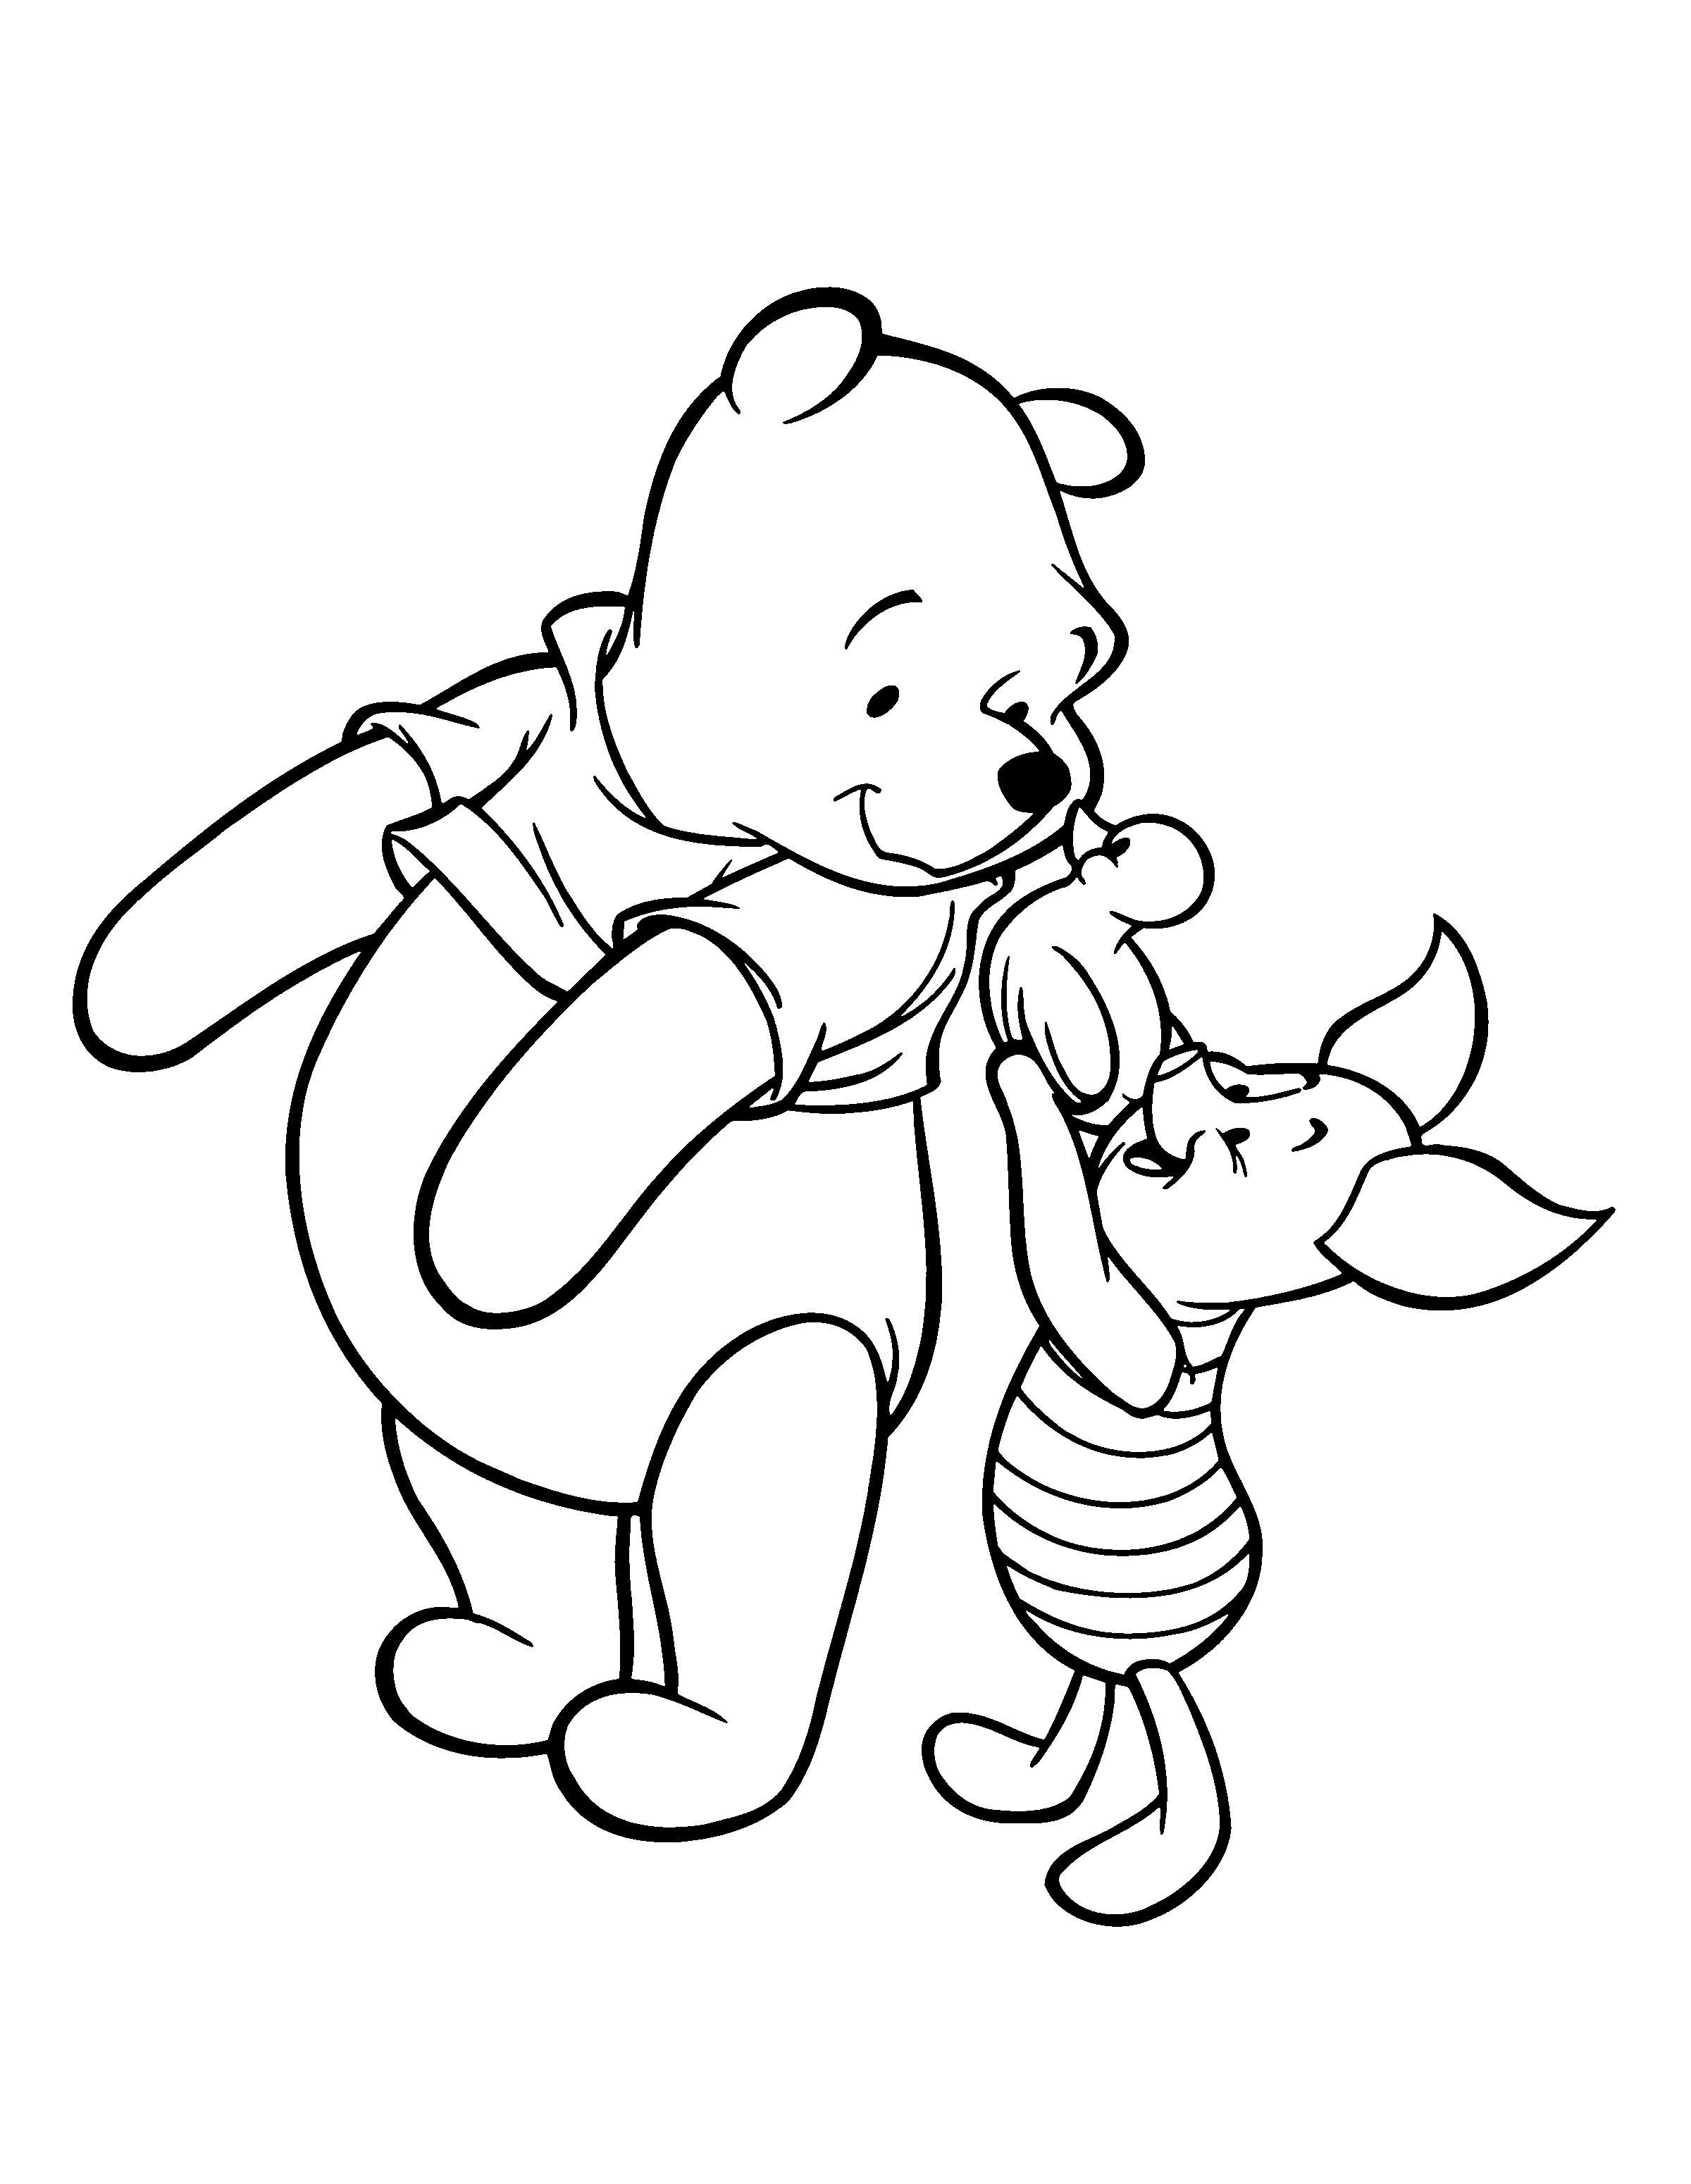 boyama-sayfasi-winnie-the-pooh-hareketli-resim-0116